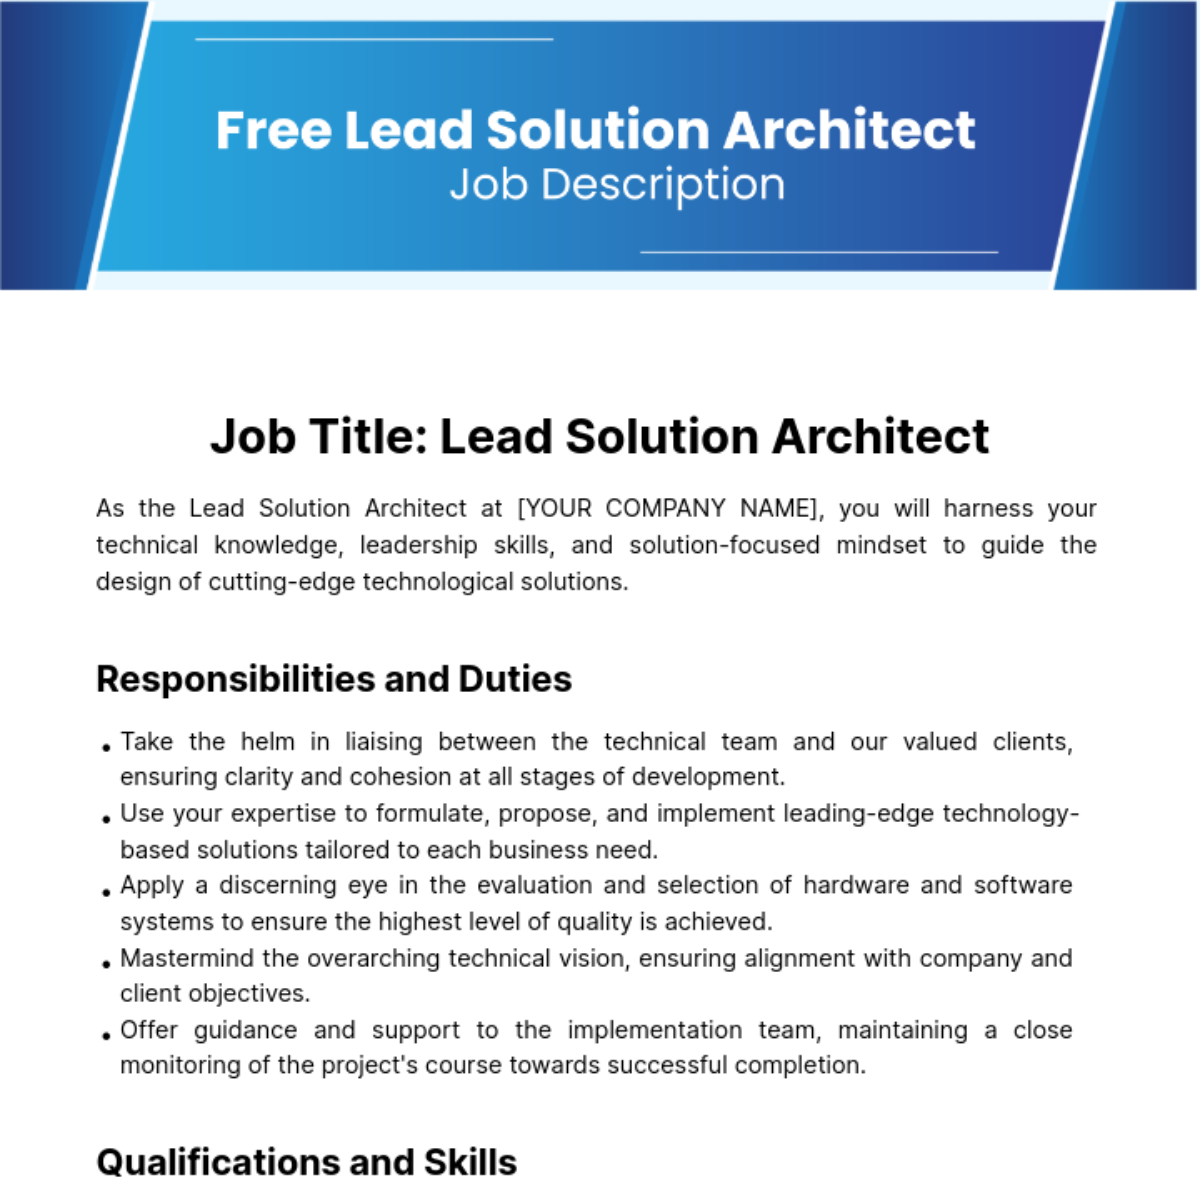 Lead Solution Architect Job Description Template